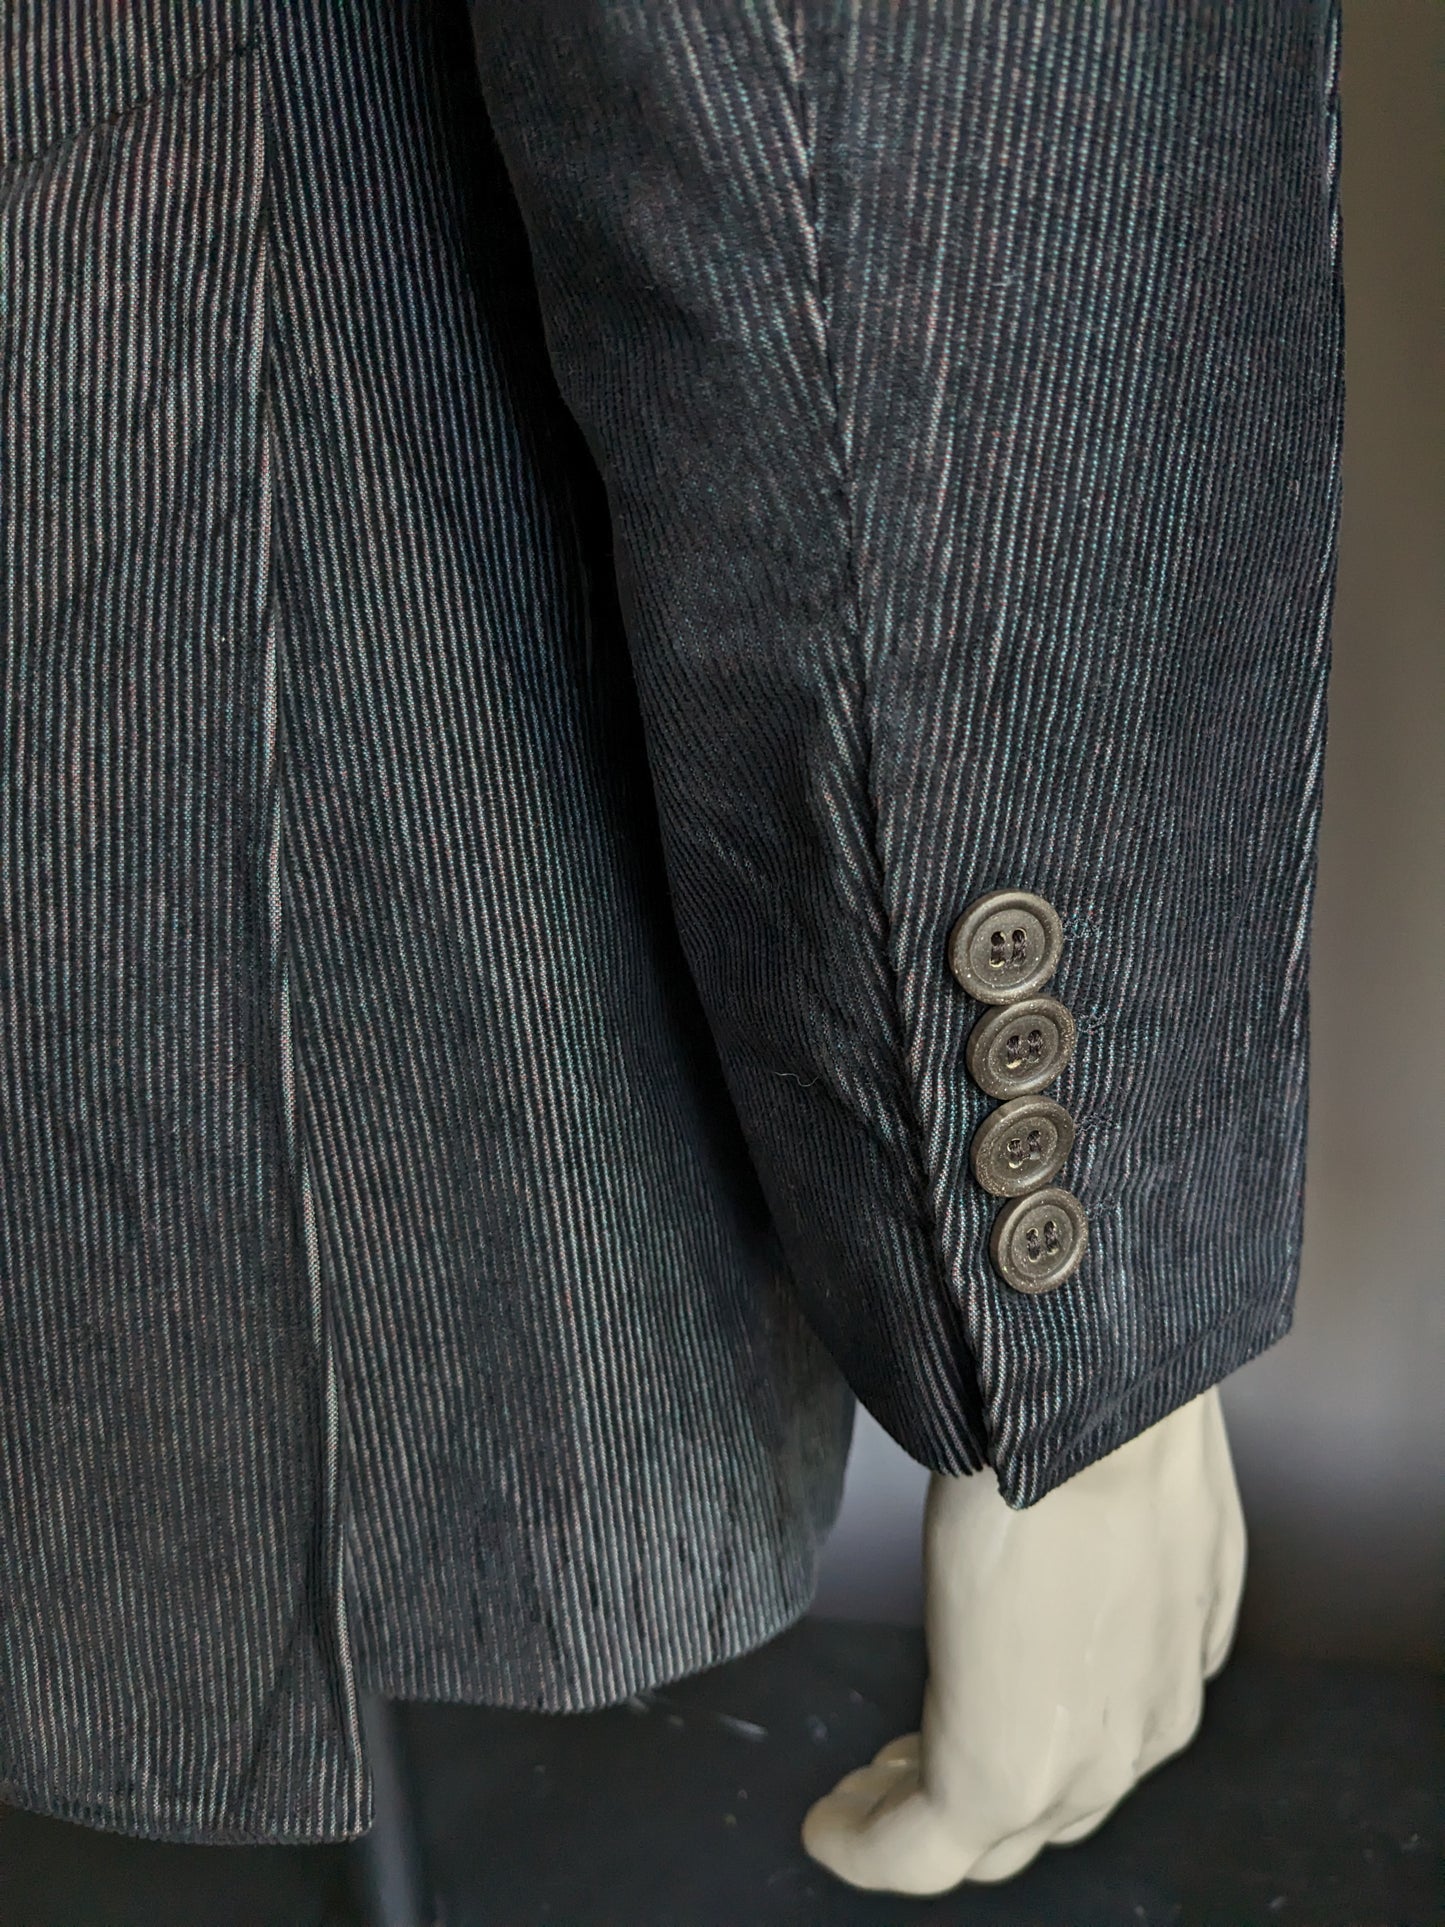 Strellson Trend line Rib Kostuum. Zwart met groen/paarse metallic glans. Maat 46 / S